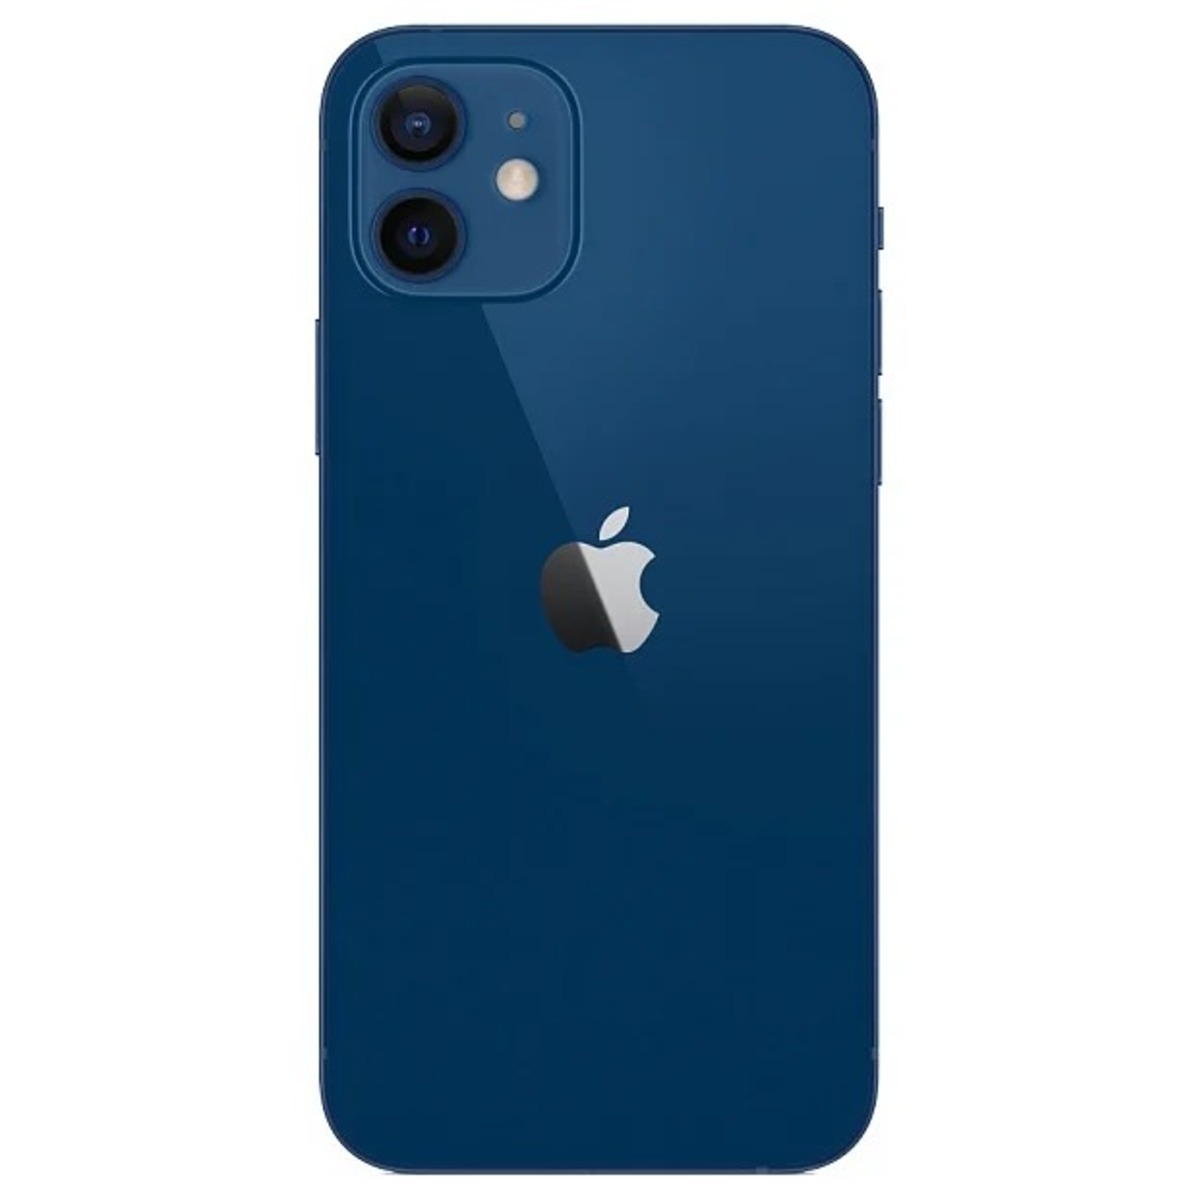 Смартфон Apple iPhone 12 64Gb, синий